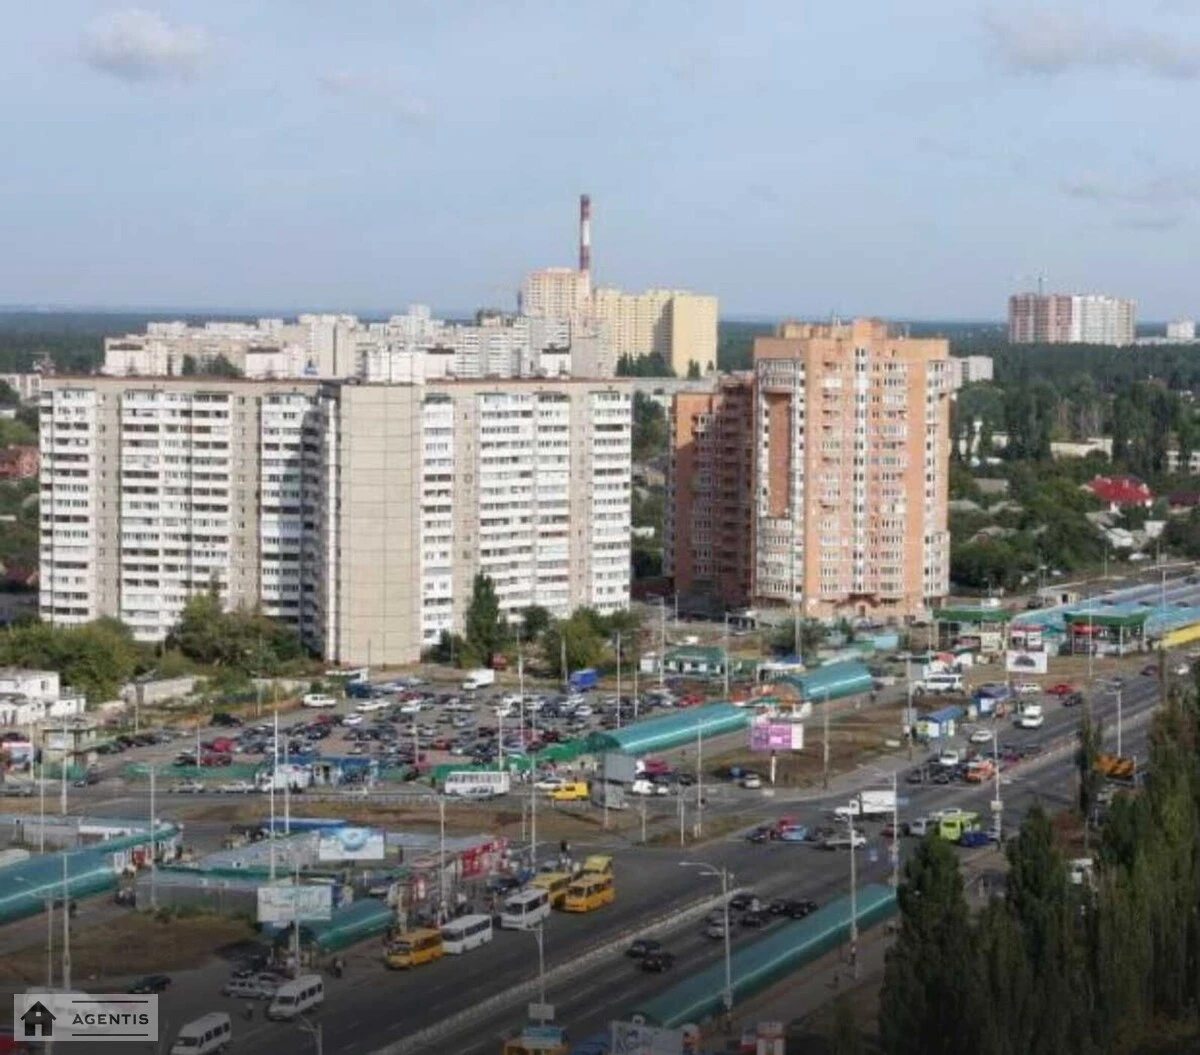 Apartment for rent. 2 rooms, 63 m², 13 floor/16 floors. 19, Akademika Yefremova vul. Komandarma Uborevycha, Kyiv. 